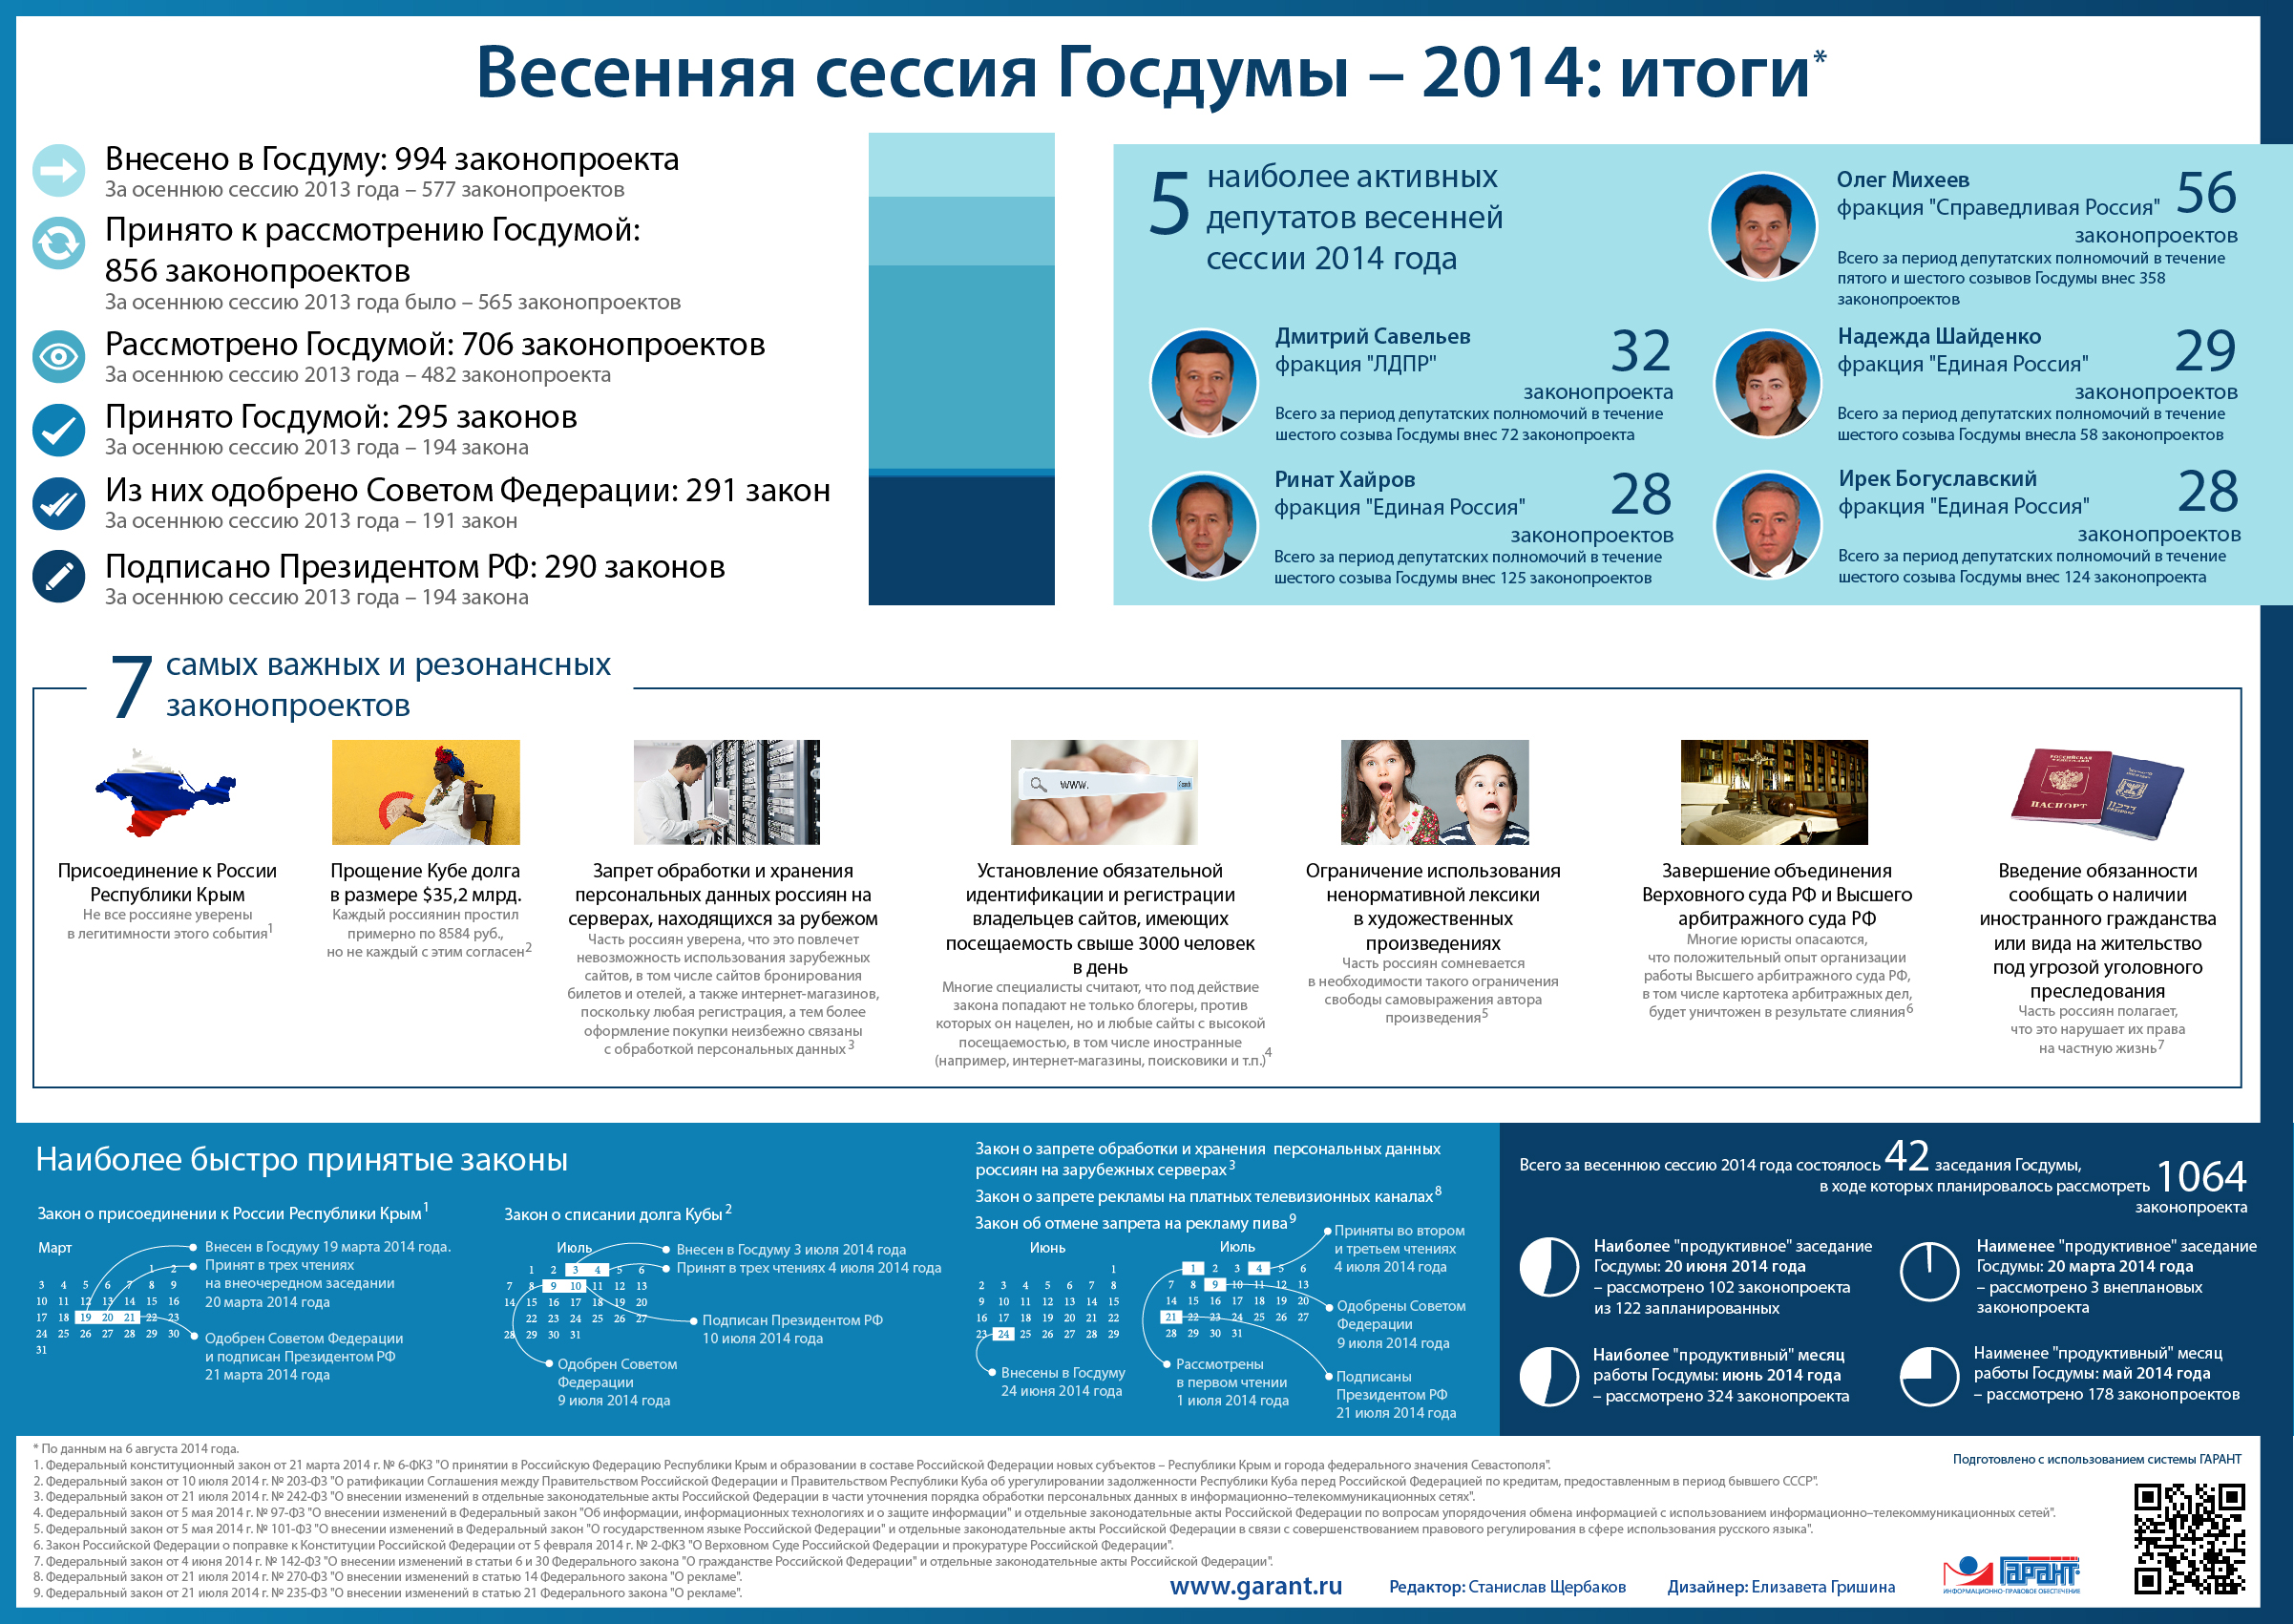 Весенняя сессия Госдумы 2014: итоги